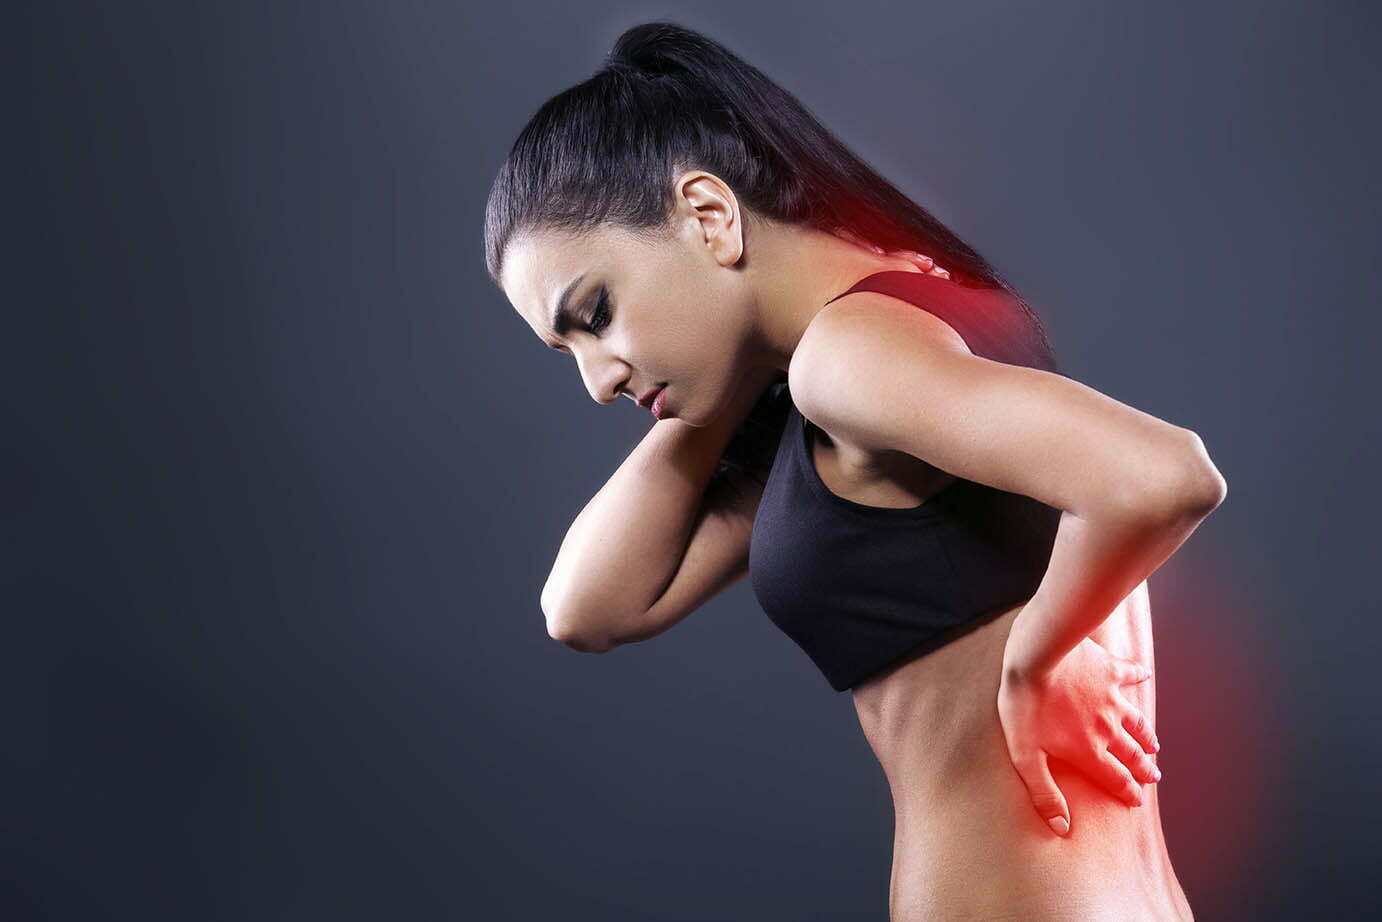 pierderea în greutate acum durerea de spate pierdere în greutate itchy anus